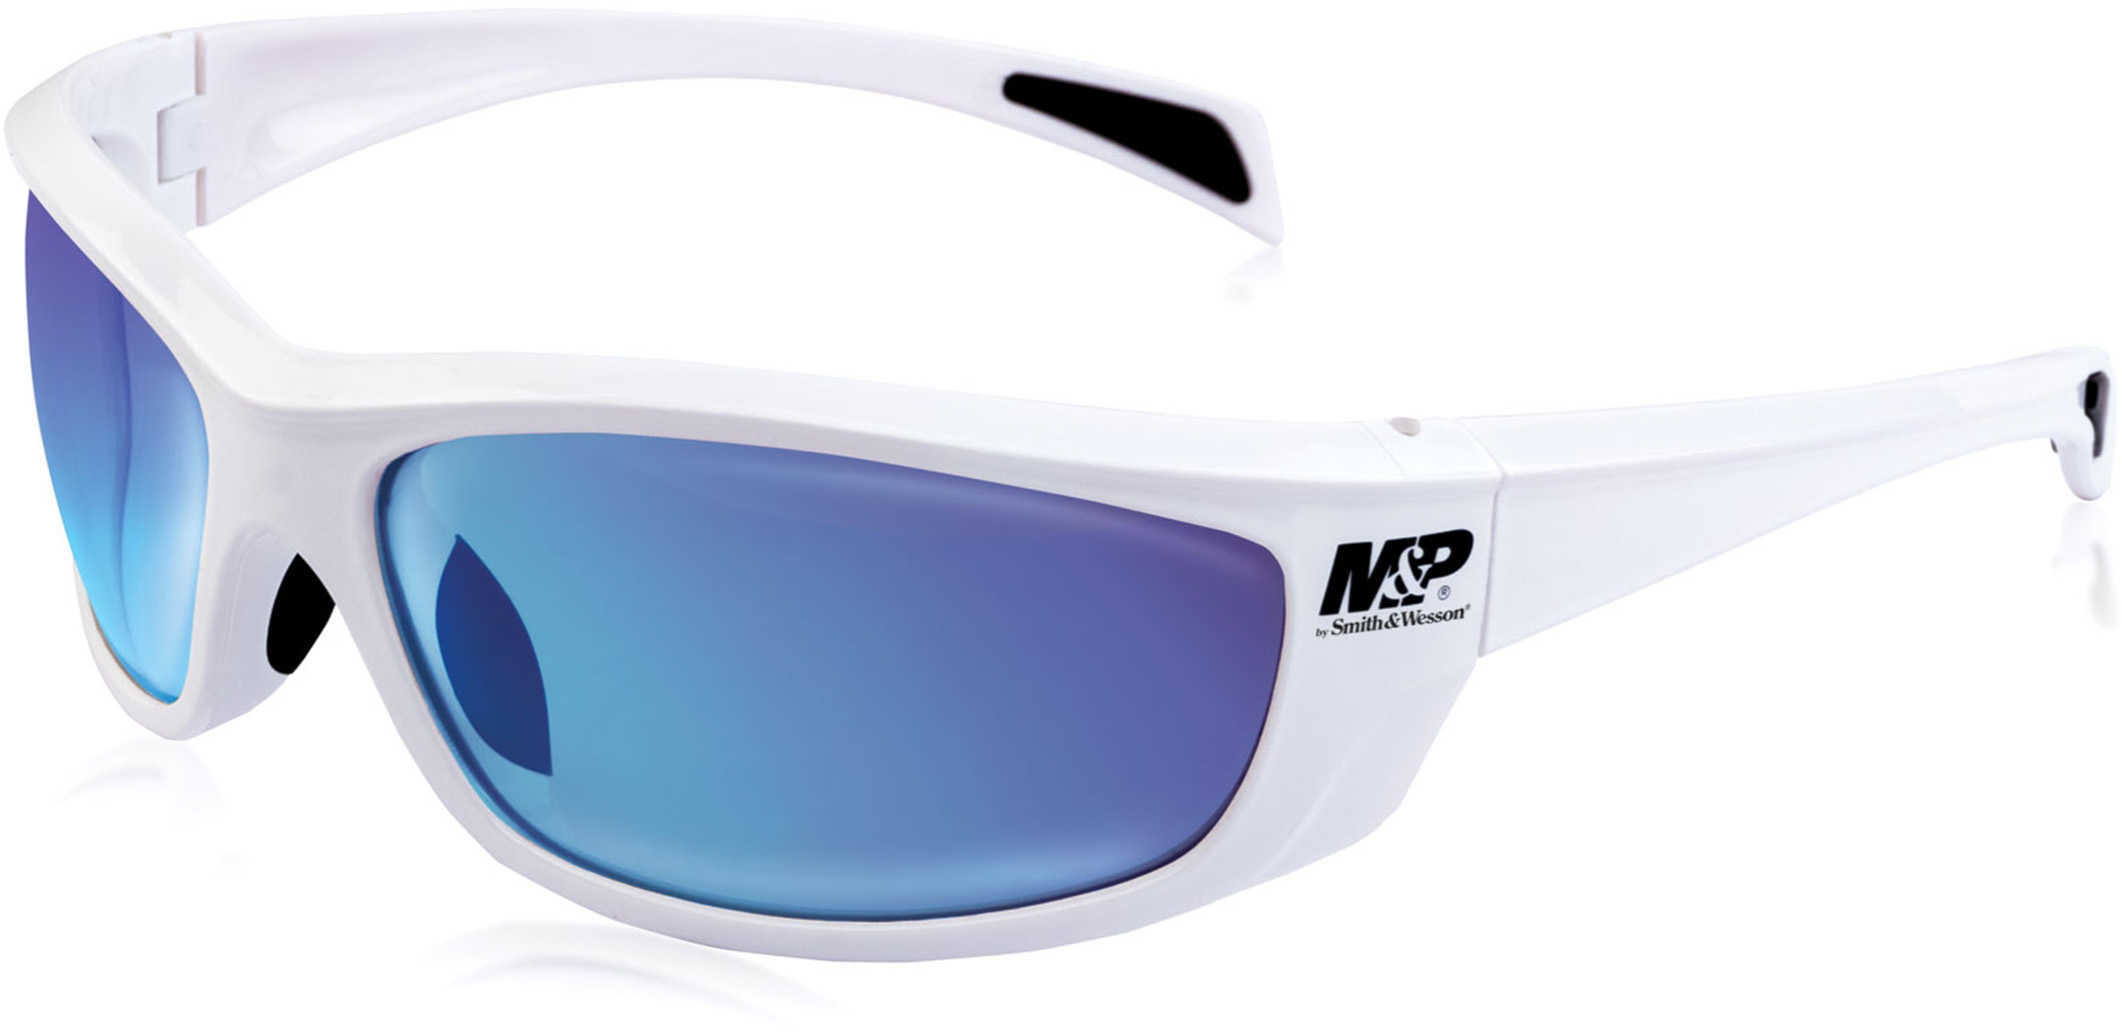 M&P Whitehawk Frame/Blue Mirror Lens Glasses